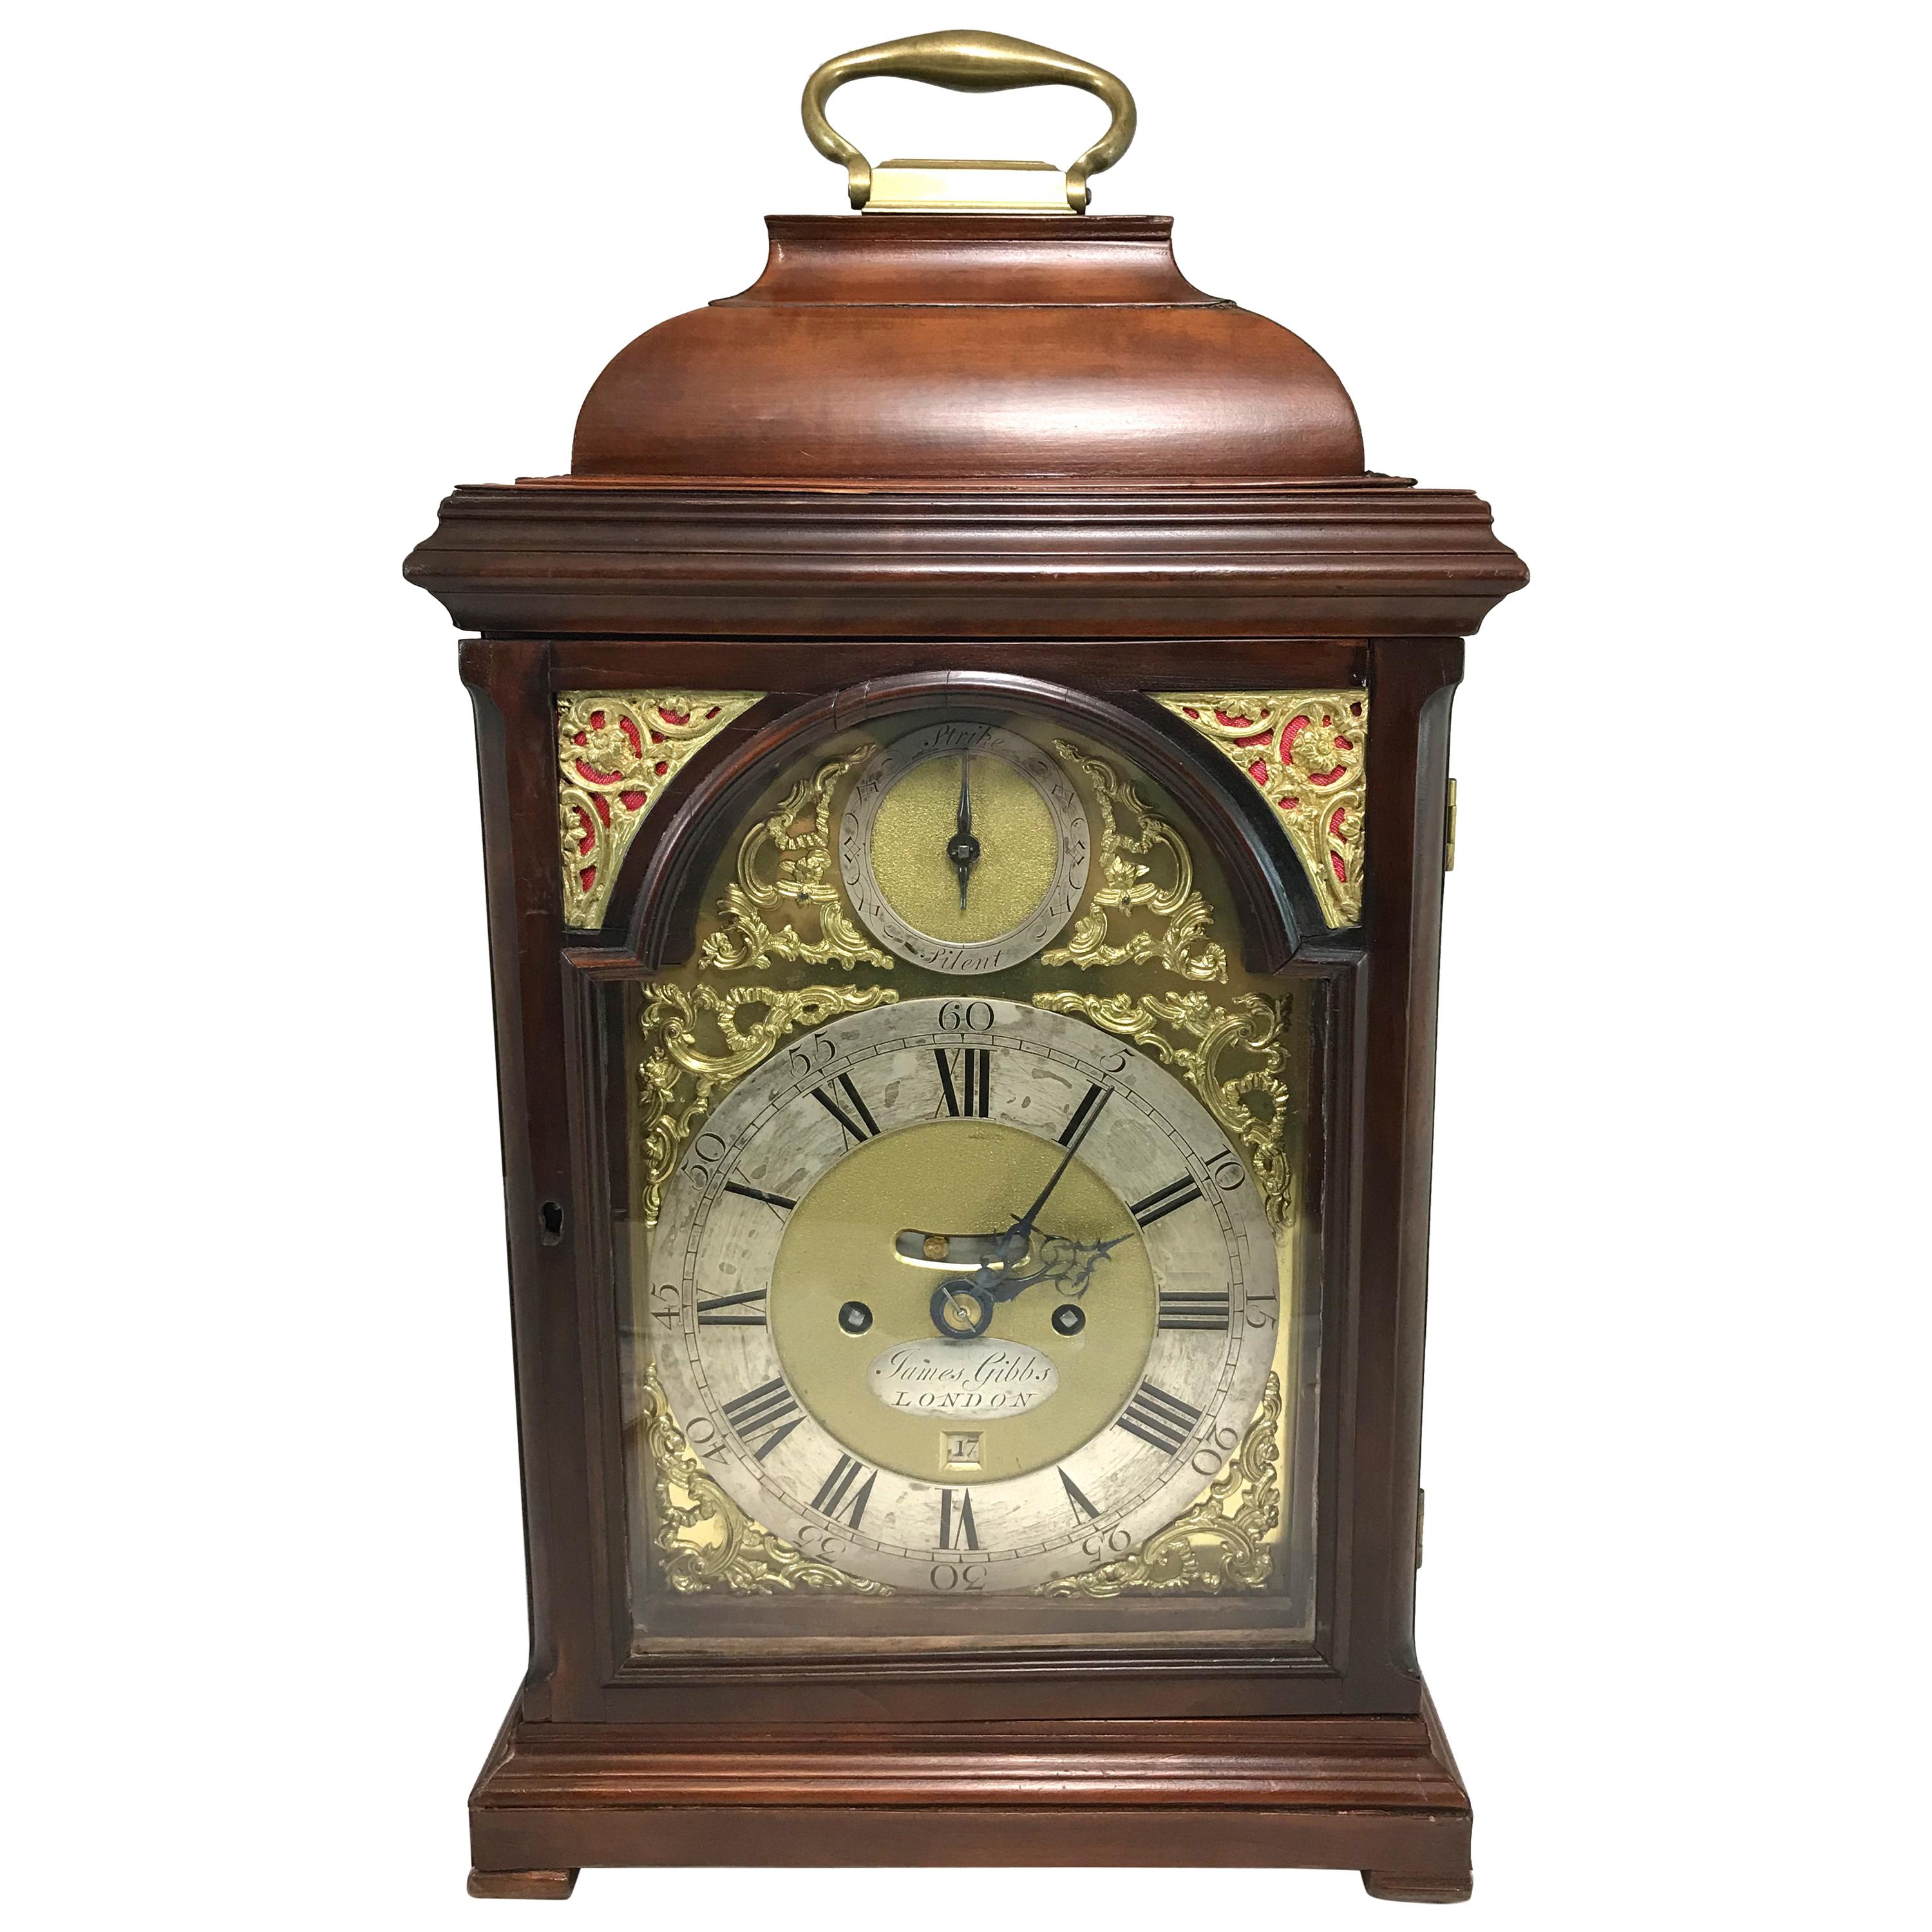 English Mahogany Case Bracket Clock, James Gibbs London, circa 1740